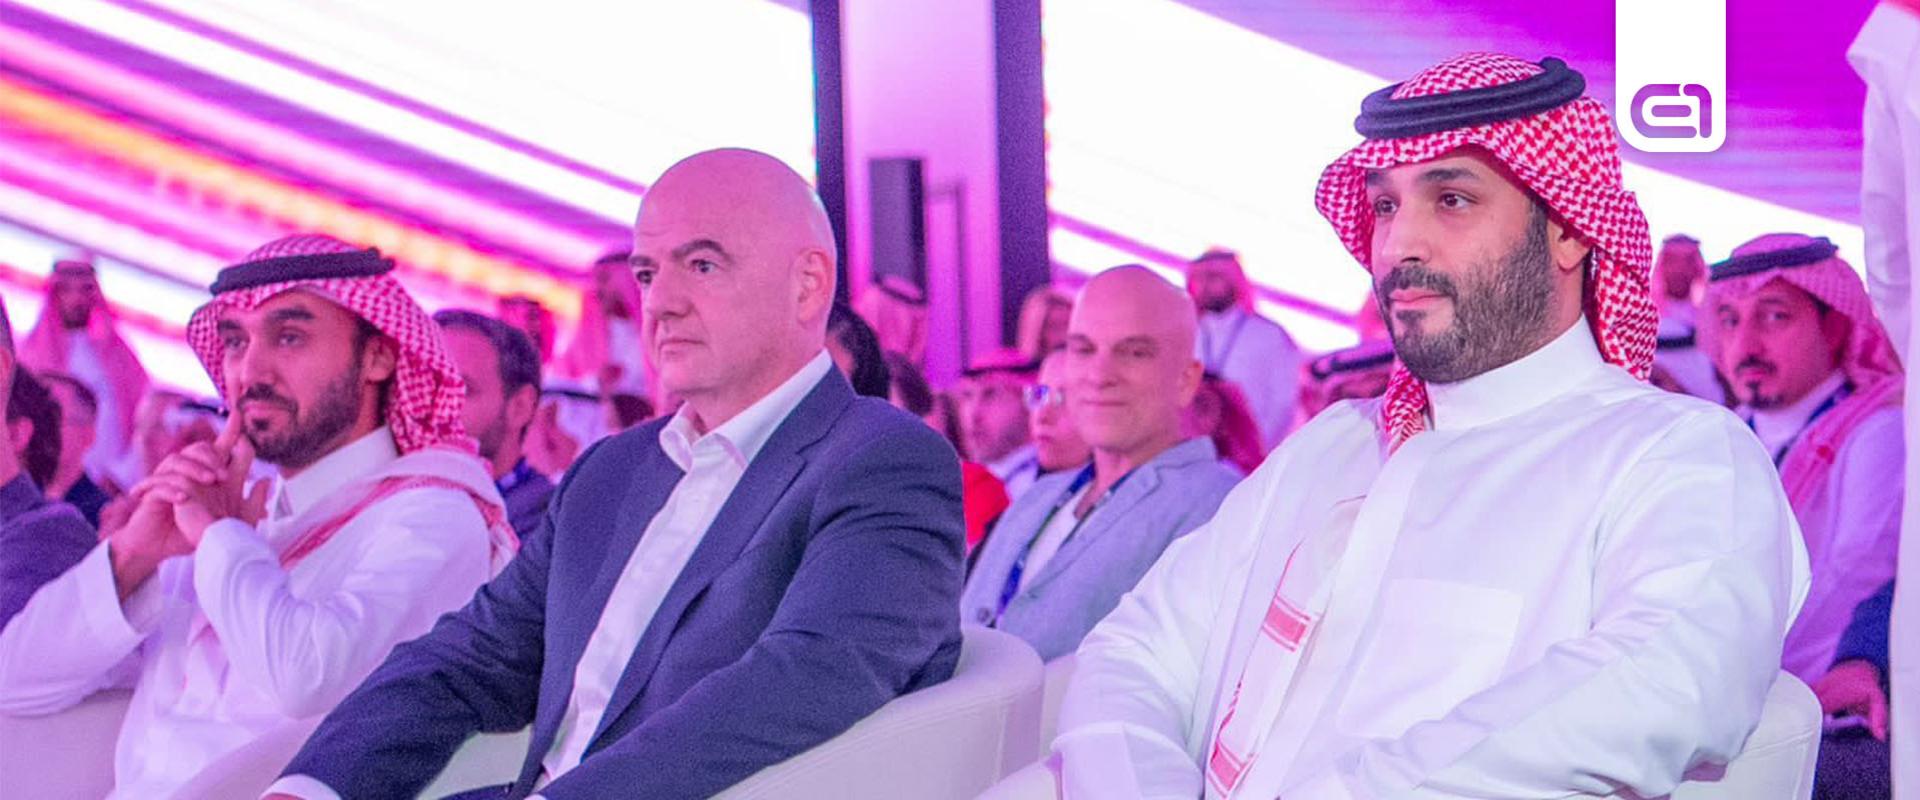 Új e-sport világbajnokságot jelentett be a szaúdi koronaherceg